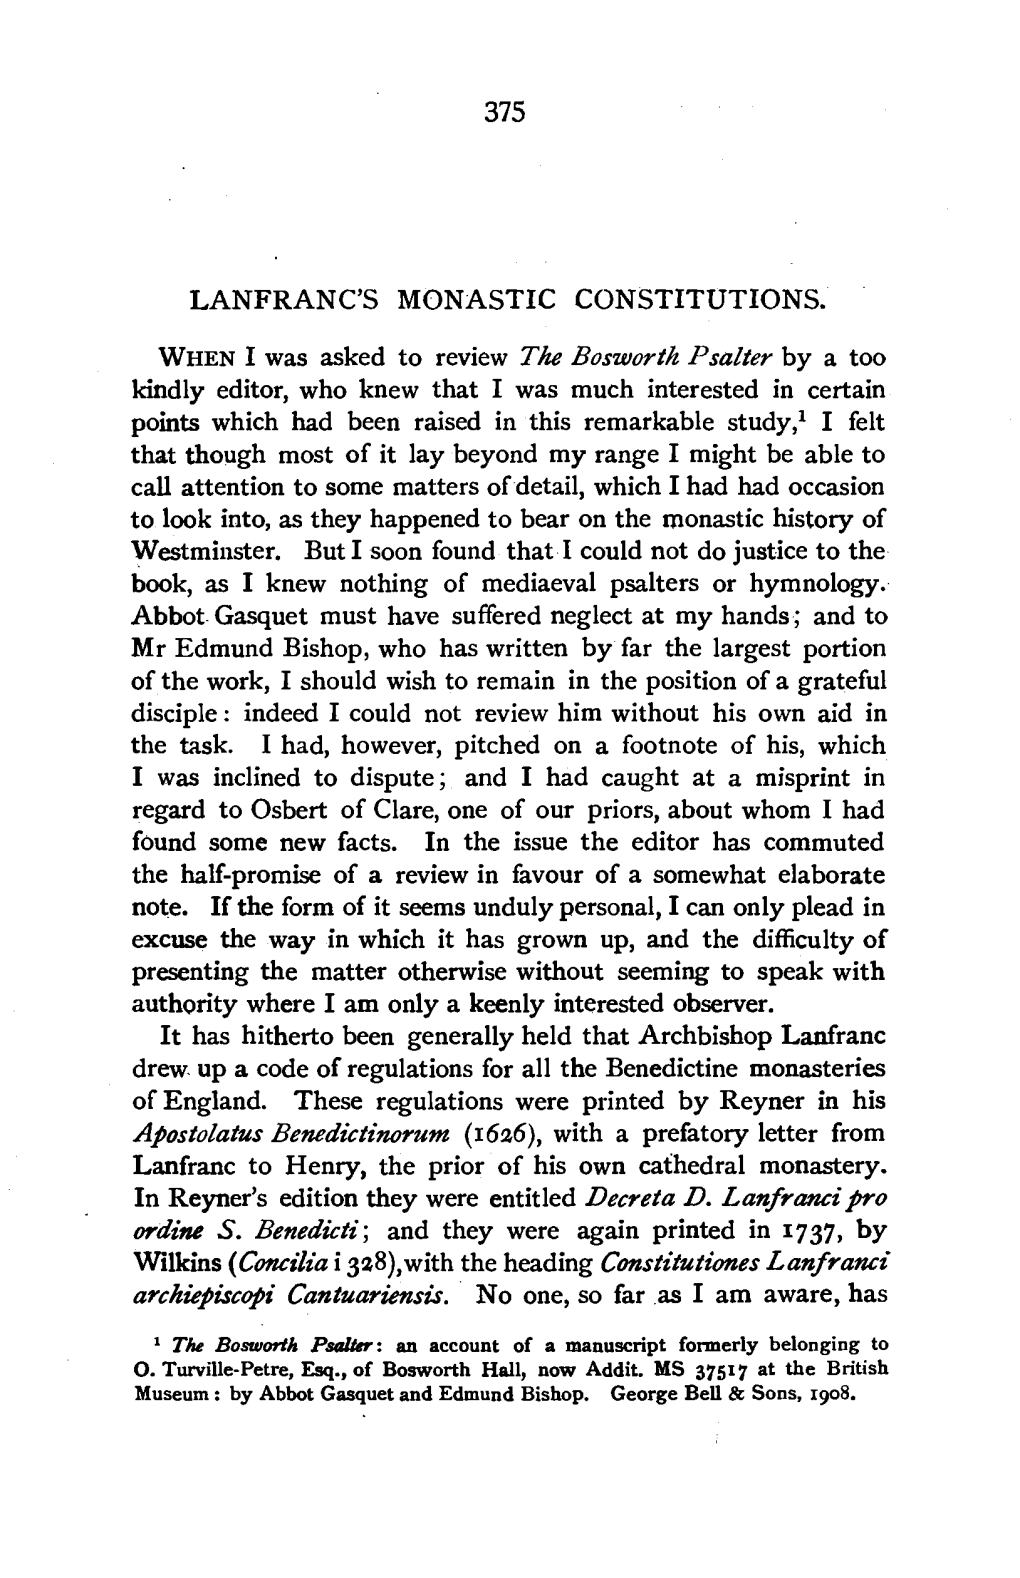 Lanfranc's Monastic Constitutions